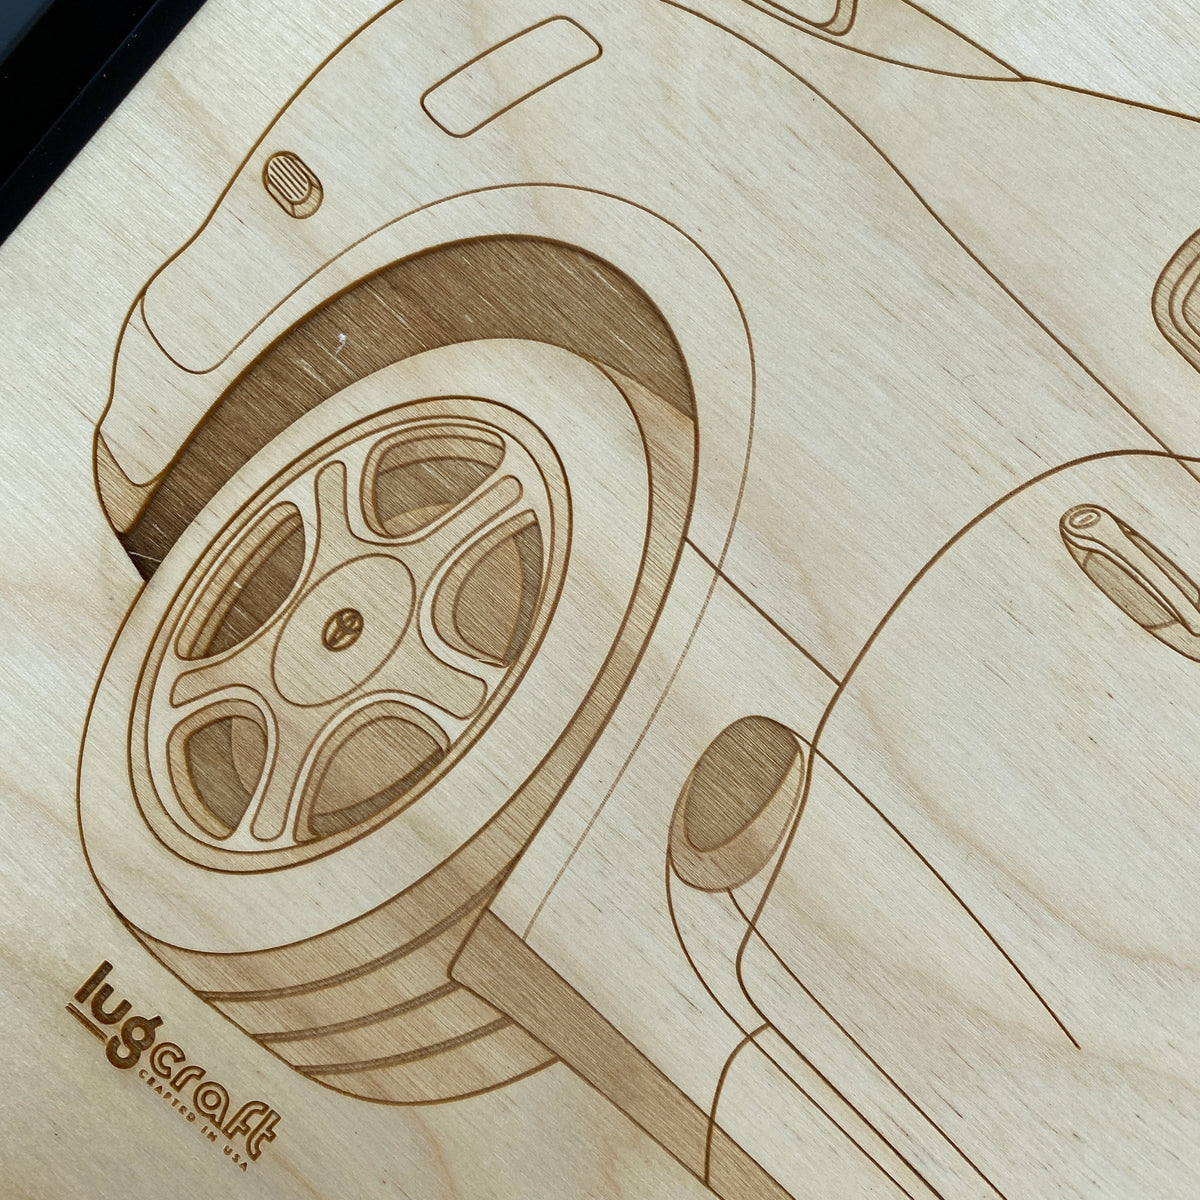 Toyota Supra Mk4 Framed Wood Engraved Artwork